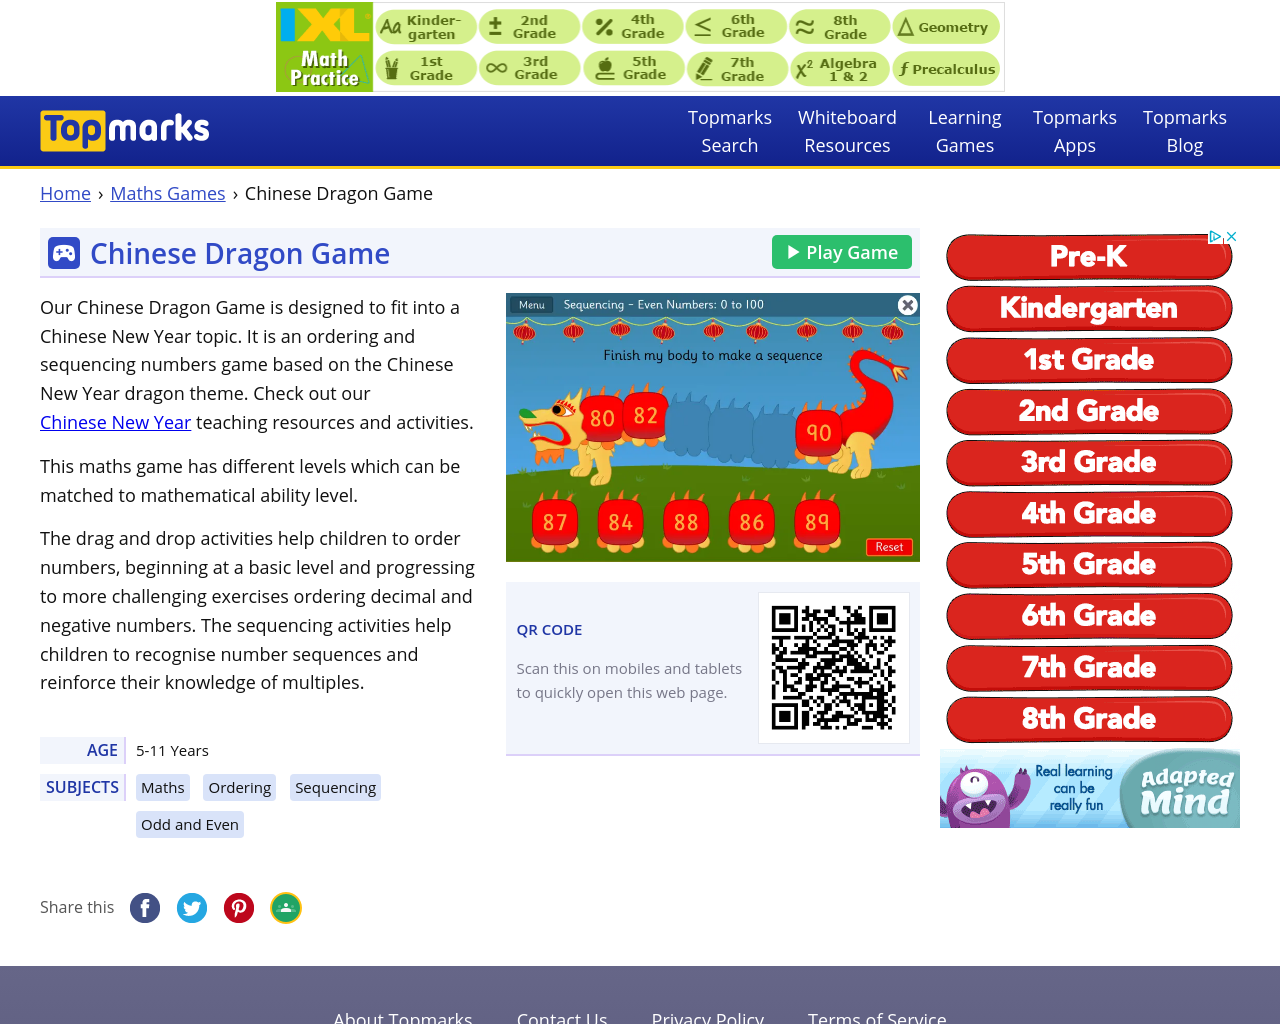 Chinese Dragon game